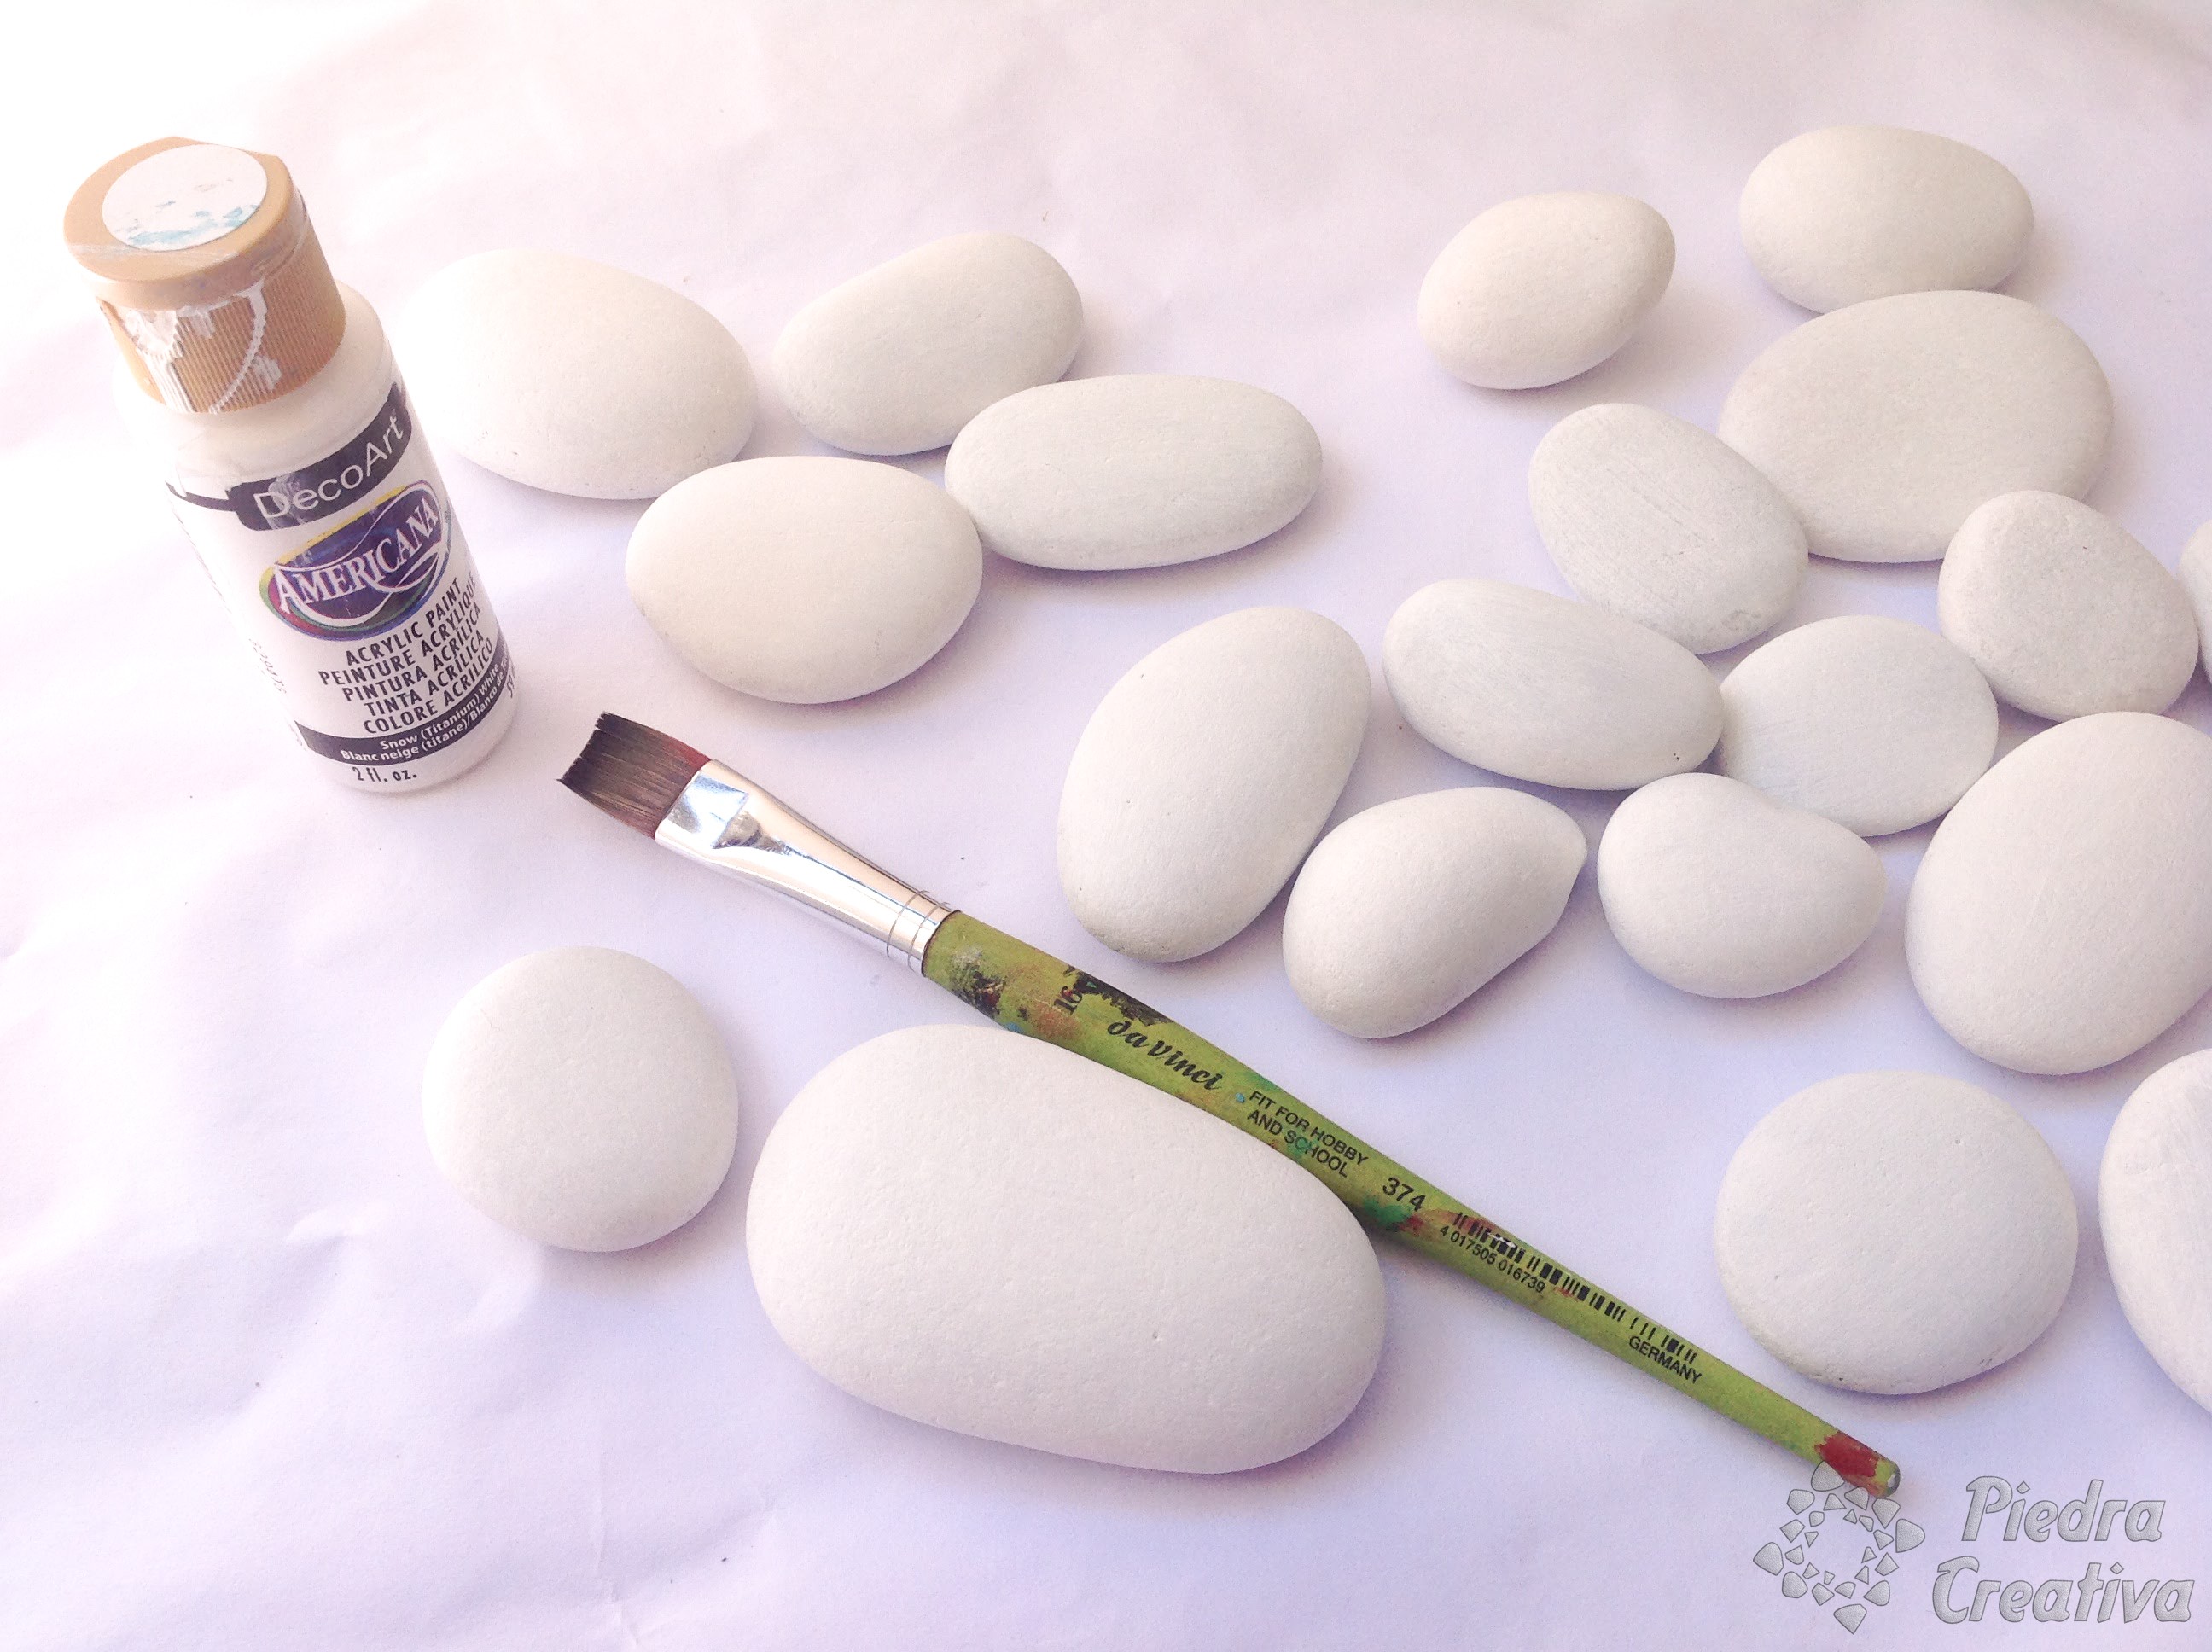 Como pintar piedras con esmalte • DIY PiedraCreativa